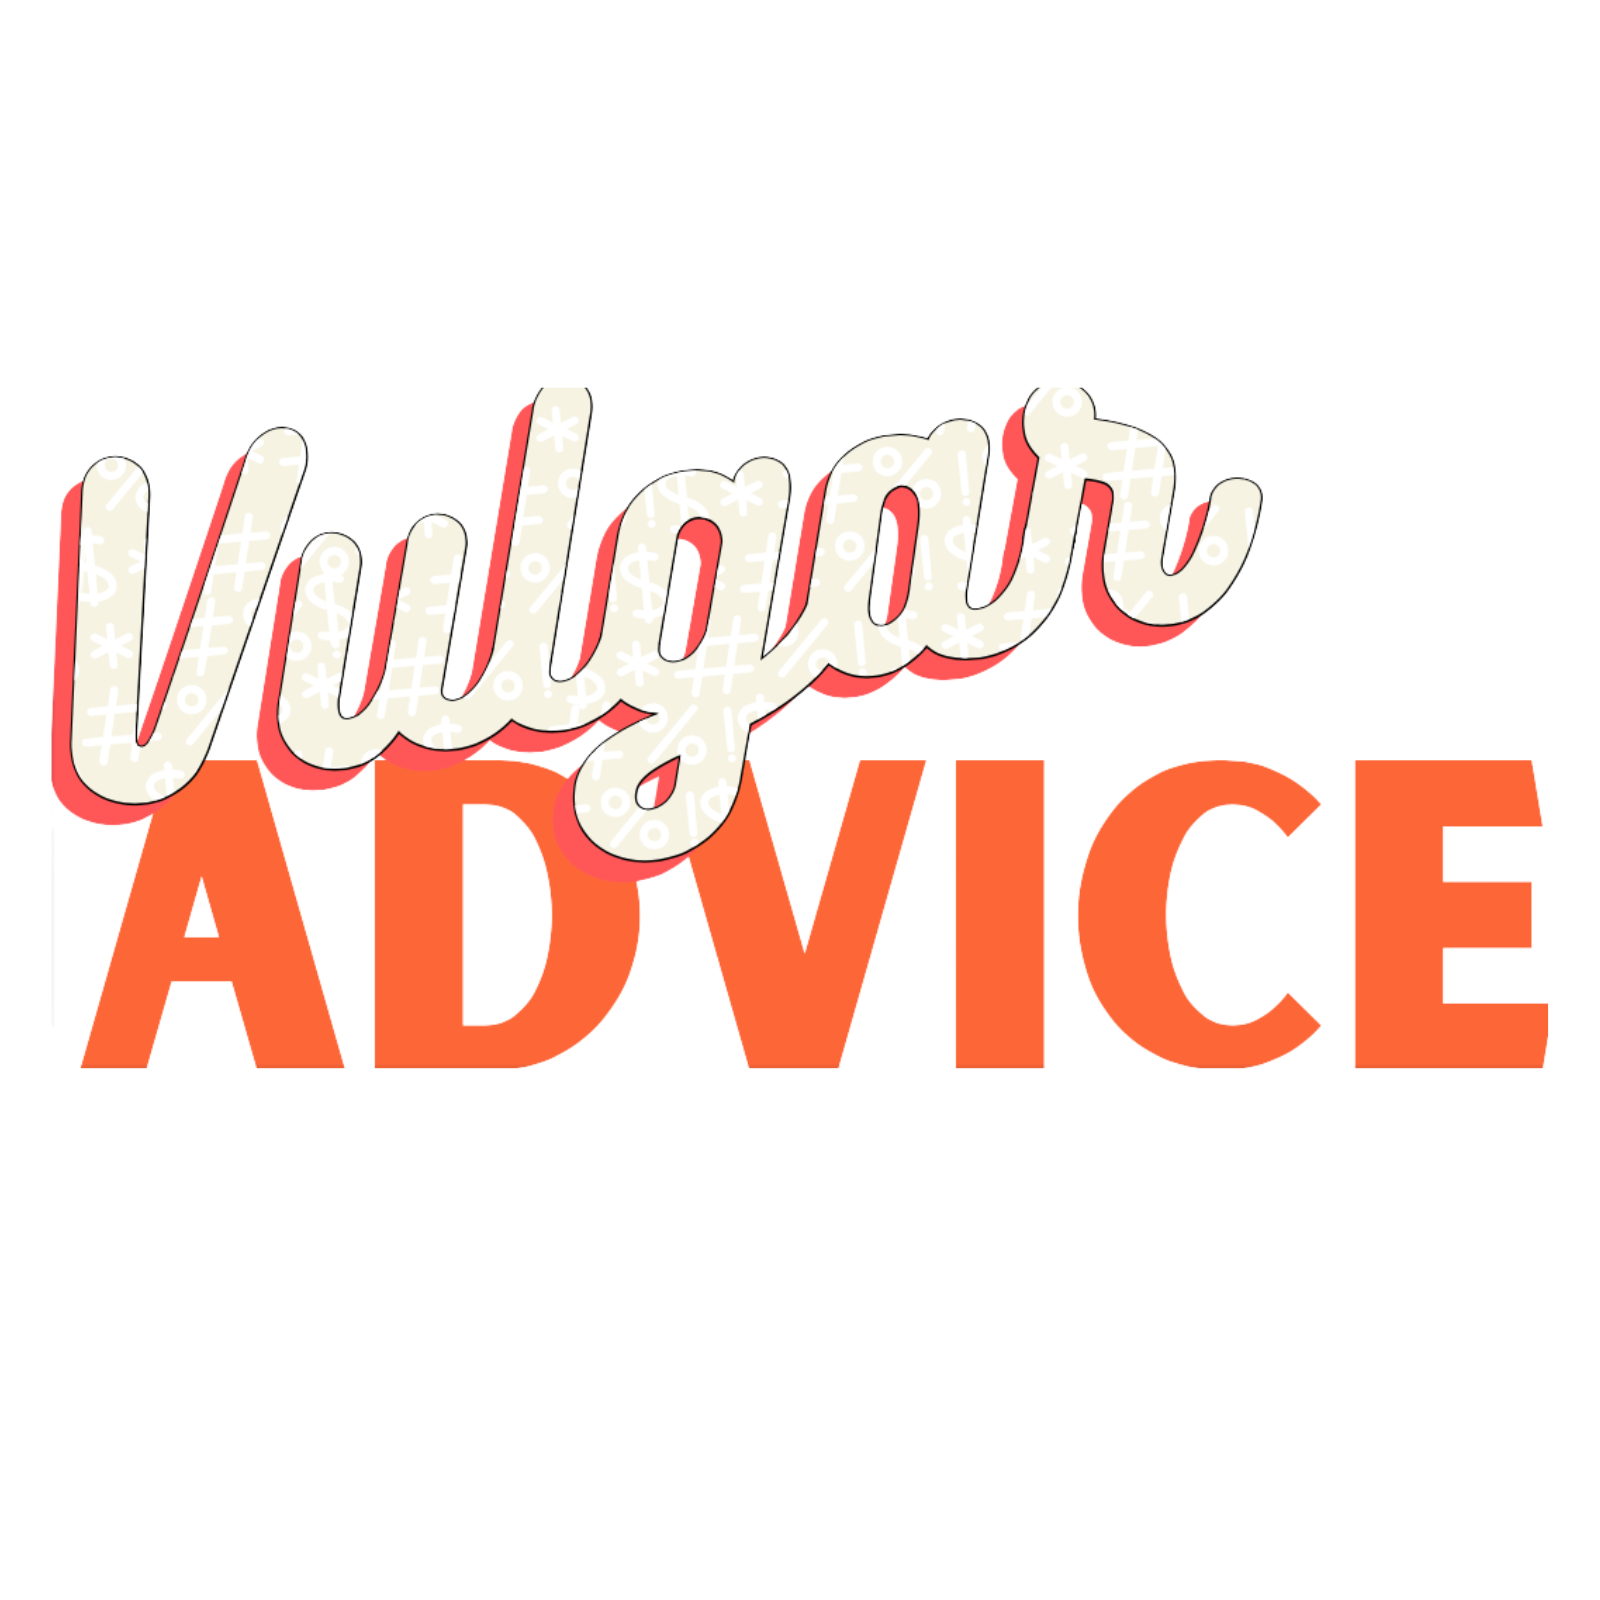 Vulgar Advice home